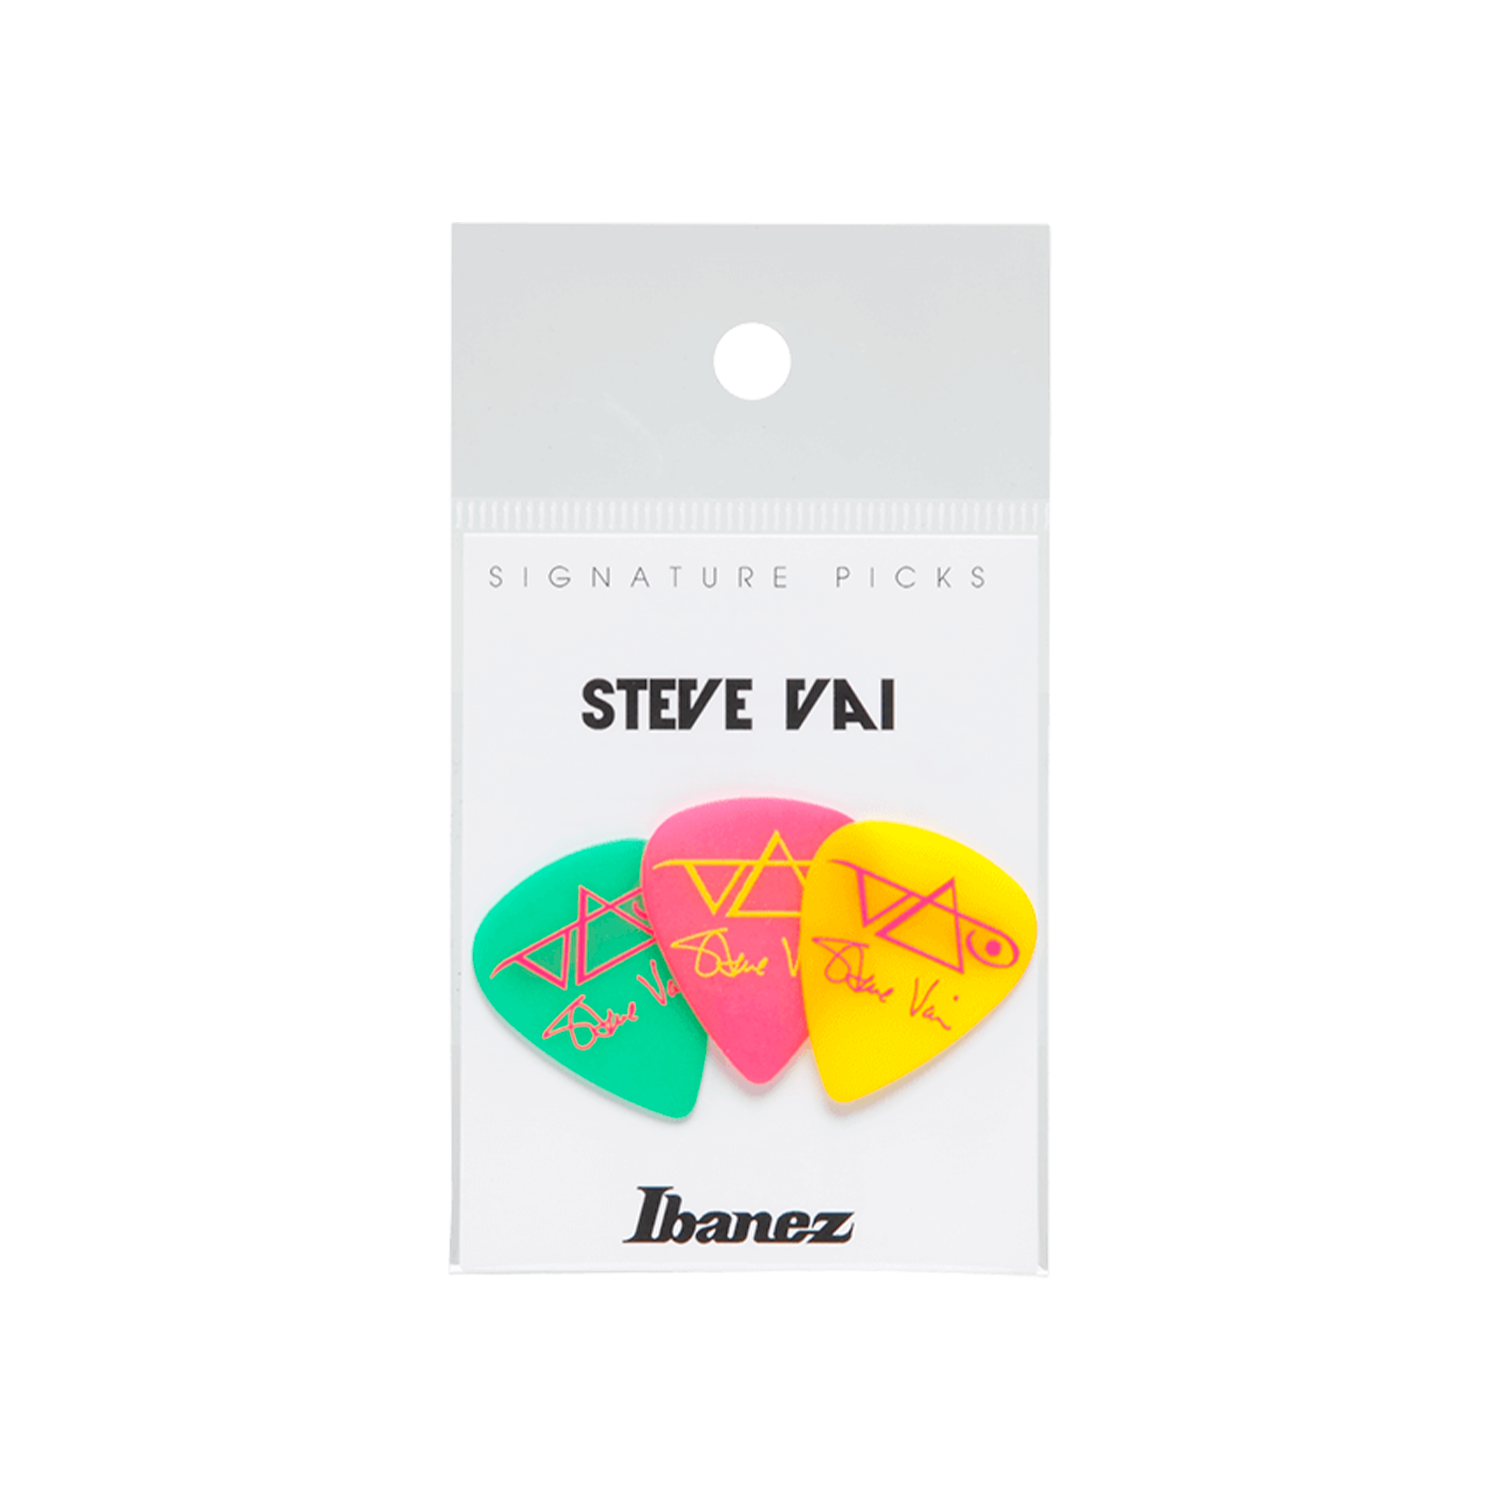 Pack de 3 uñas Ibanez - Steve Vai GPY